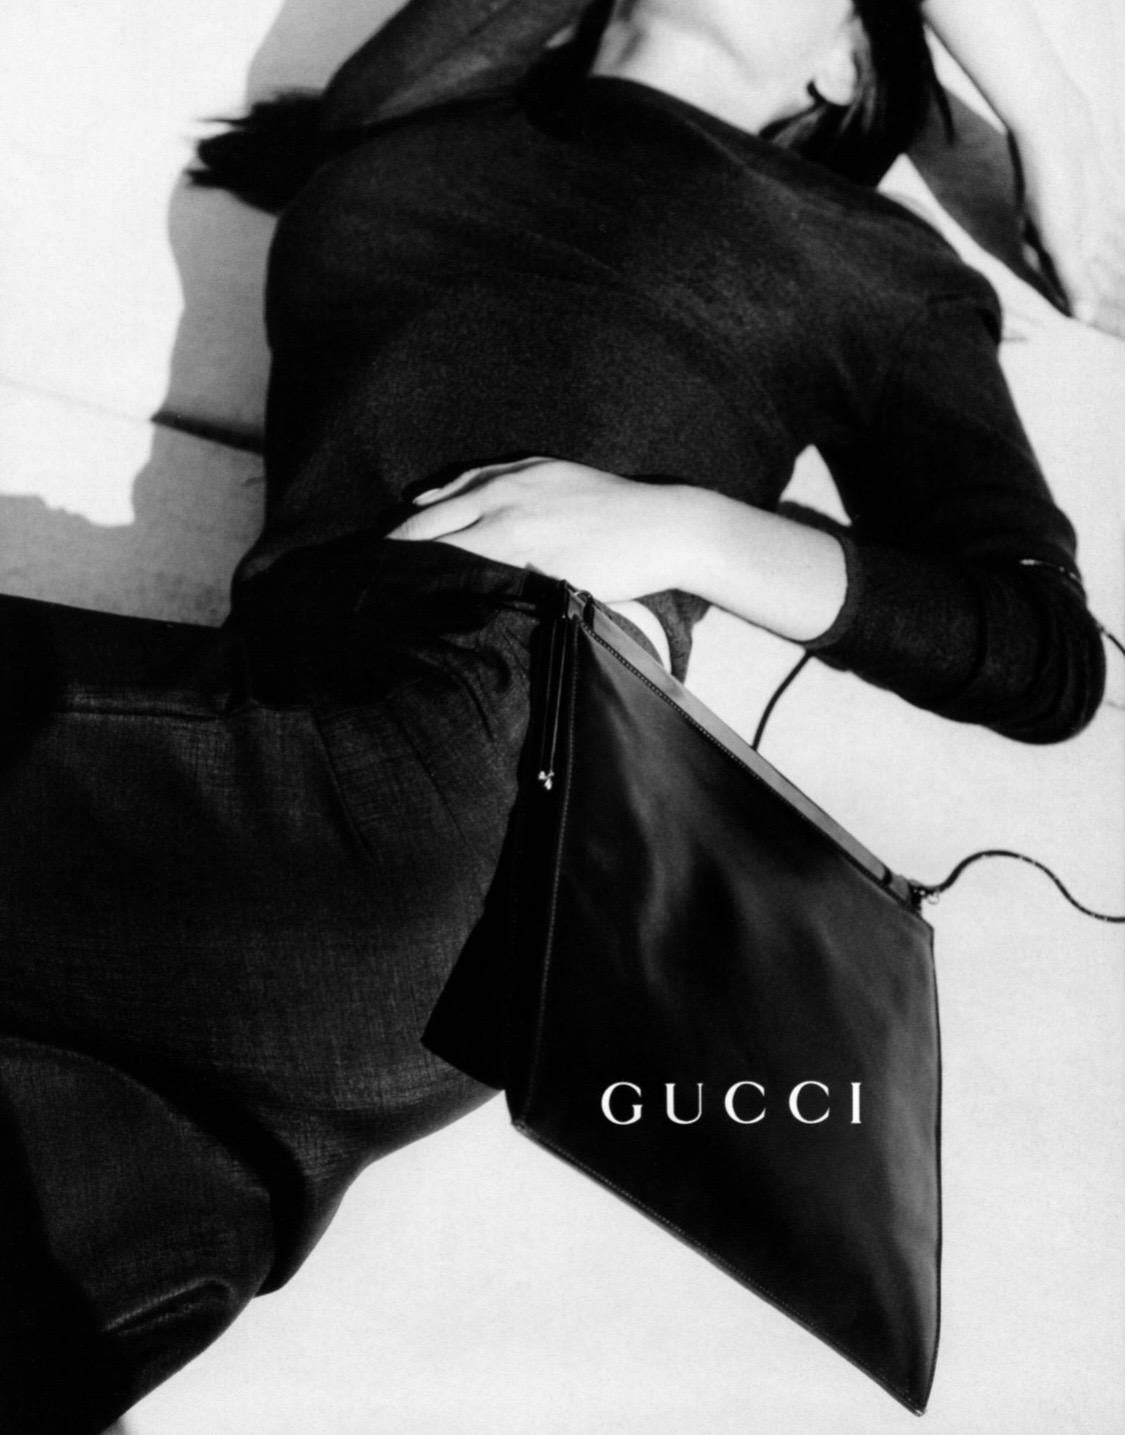 Die von Tom Ford für die Frühjahr/Sommer-Kollektion 1997 von Gucci entworfene Umhängetasche aus Leder wird vorgestellt. Diese Tasche wurde erstmals auf dem Laufsteg präsentiert und war auch in der Werbekampagne der Saison zu sehen, die von Mario